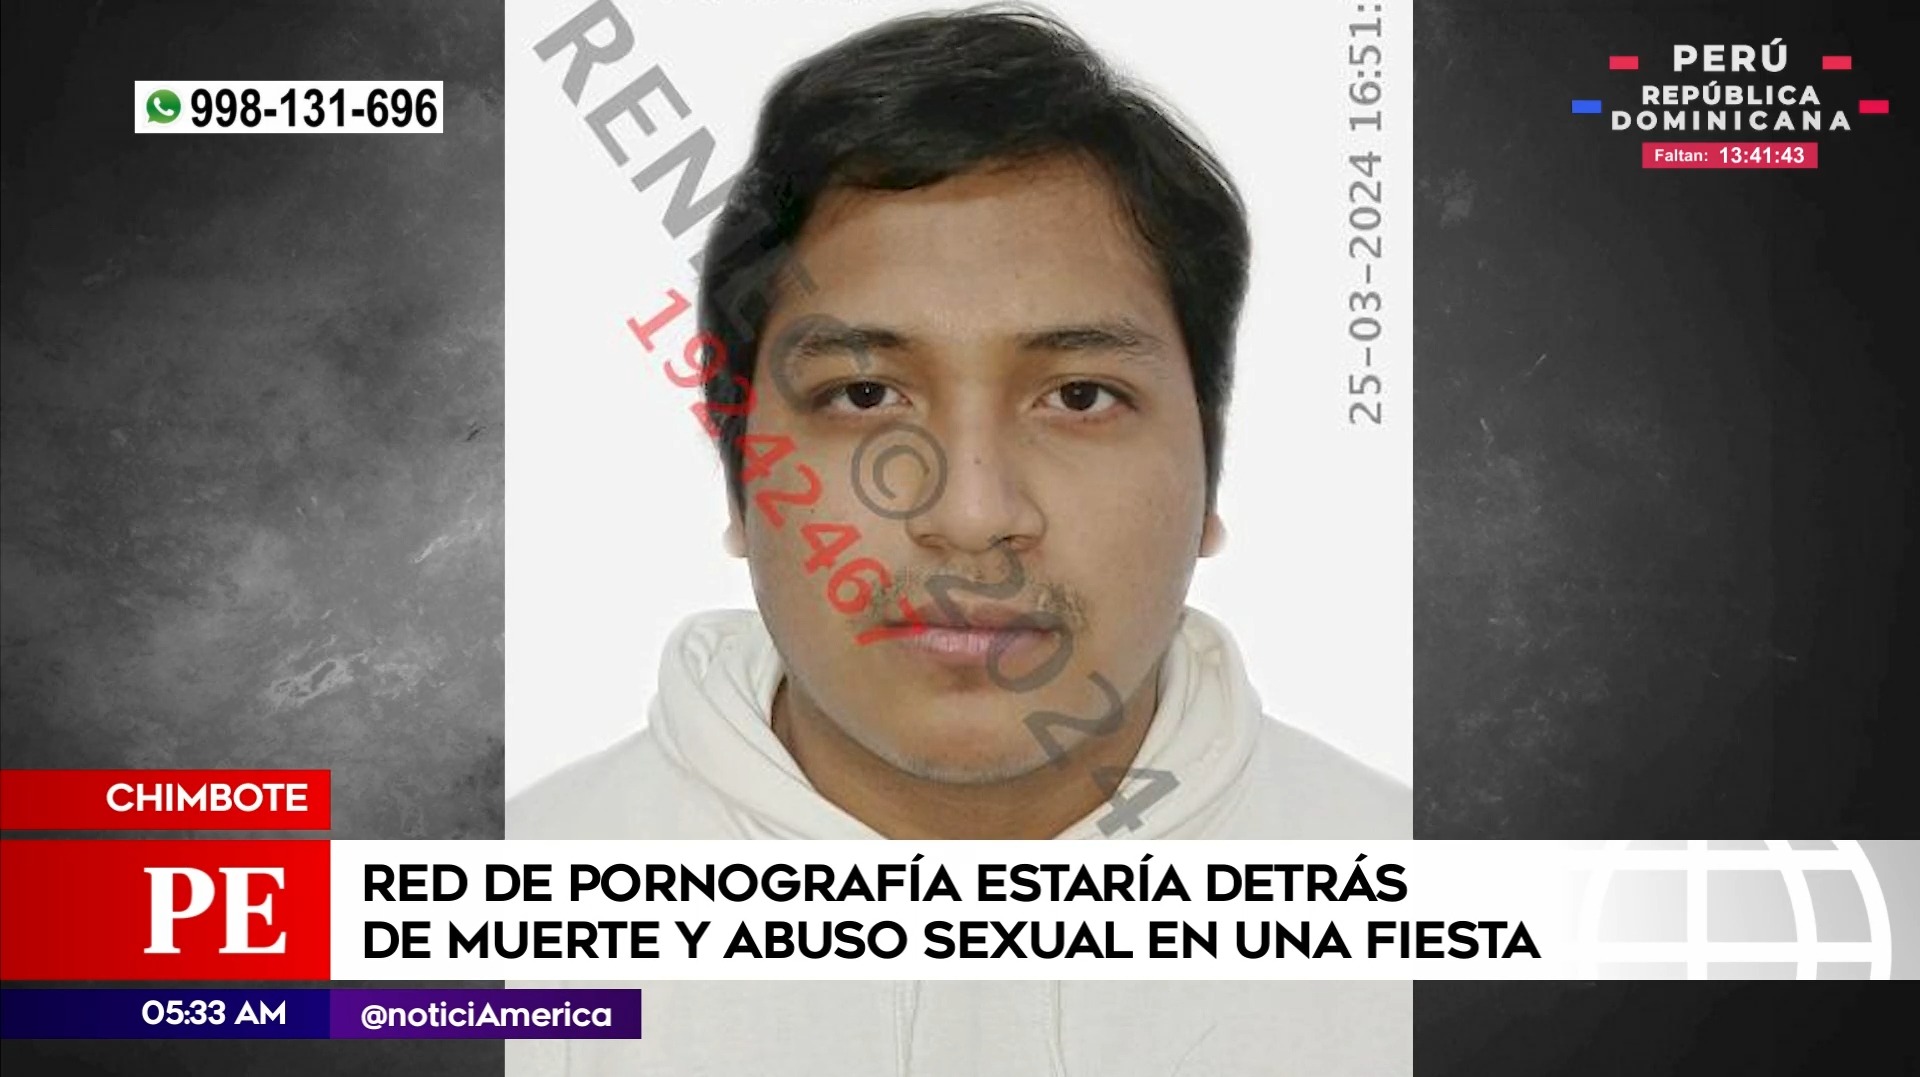 Red de pornografía estaría detrás de muerte y abuso en Chimbote. Foto: América Noticias